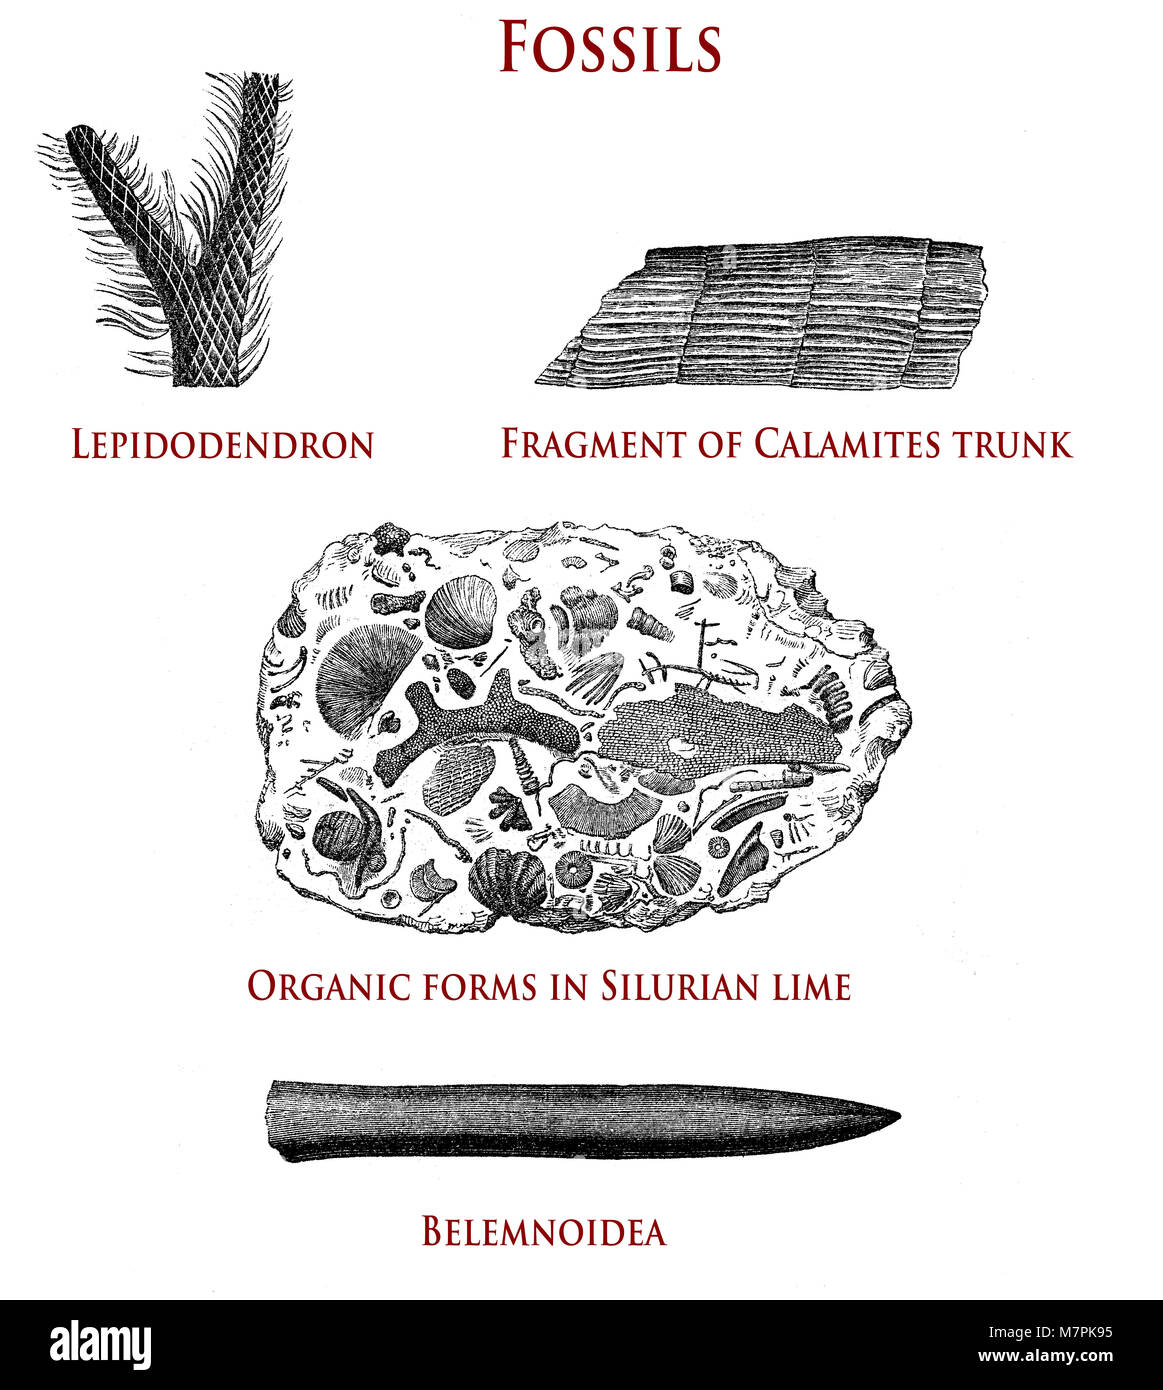 Illustrazione vintage di fossili: lepidodendron, calamites, forme organiche in Silurian calce e belemnoidea Foto Stock